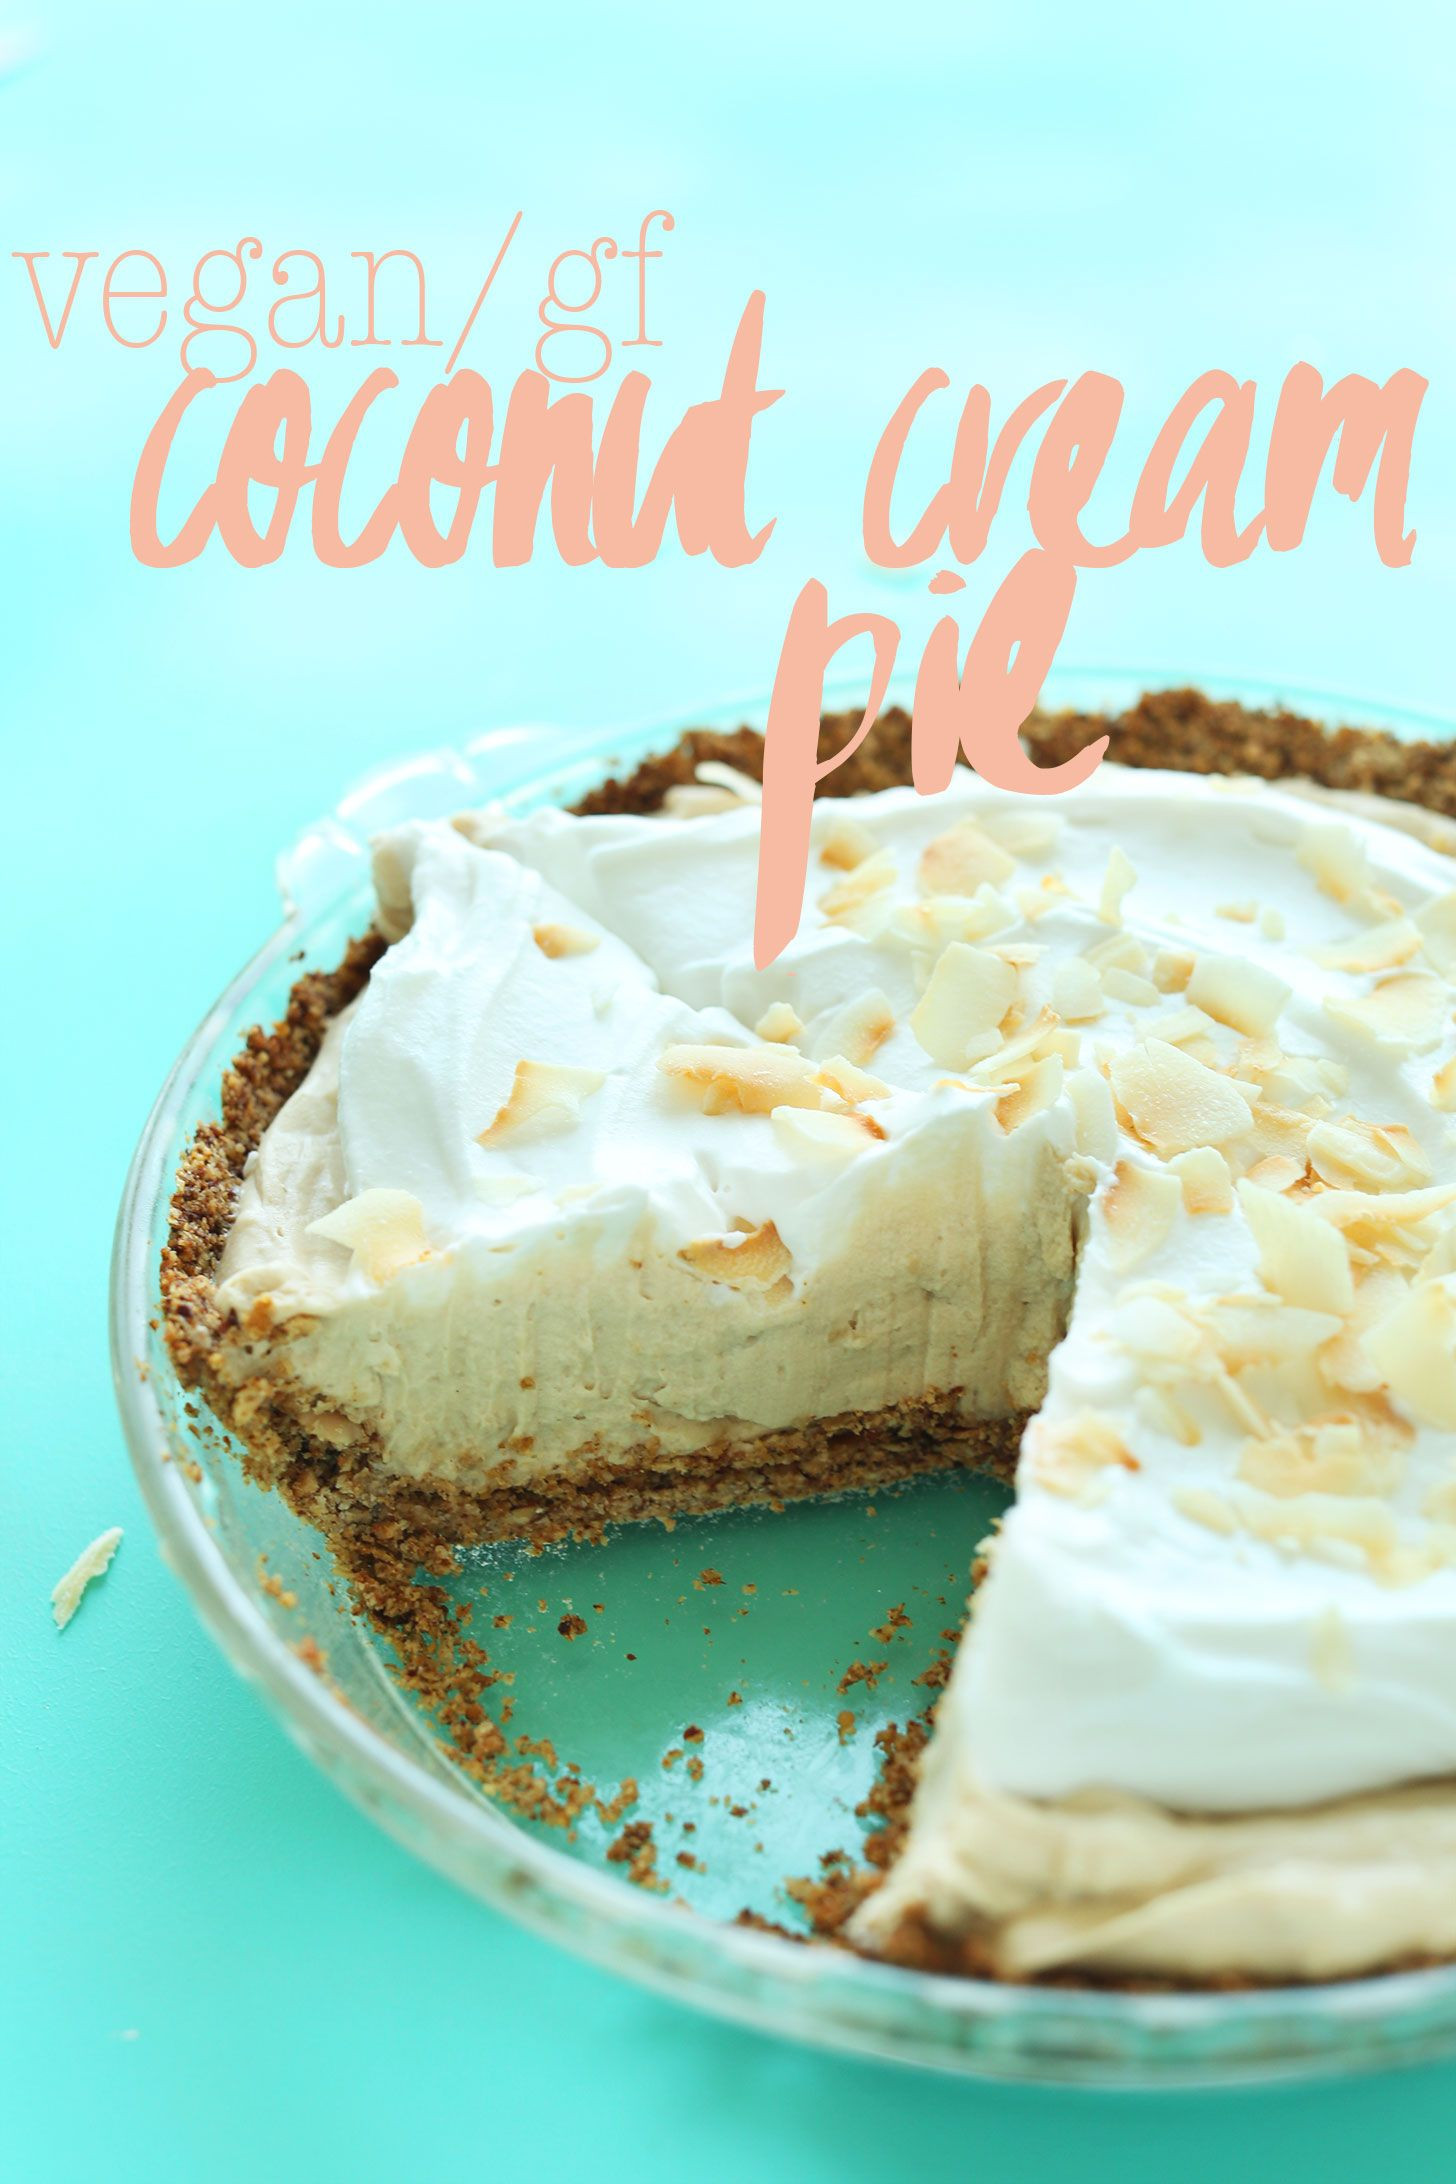 Vegan Dessert Recipes With Coconut Milk
 Coconut Cream Pie Vegan GF Recipe